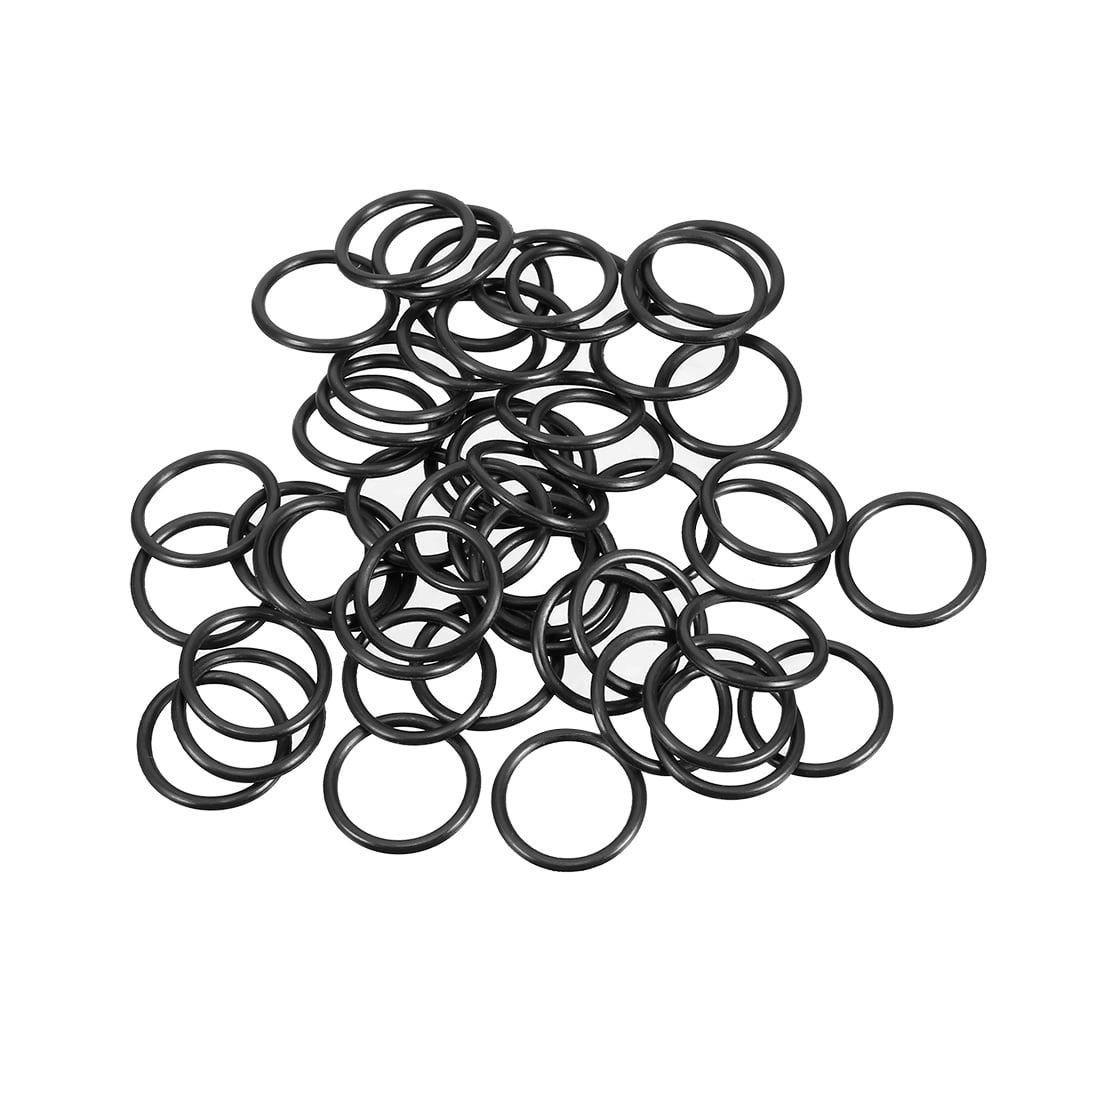 O-Rings Nitrile Rubber 34mm x 38mm x 2mm Seal Ring Sealing Gasket 10pcs |  eBay